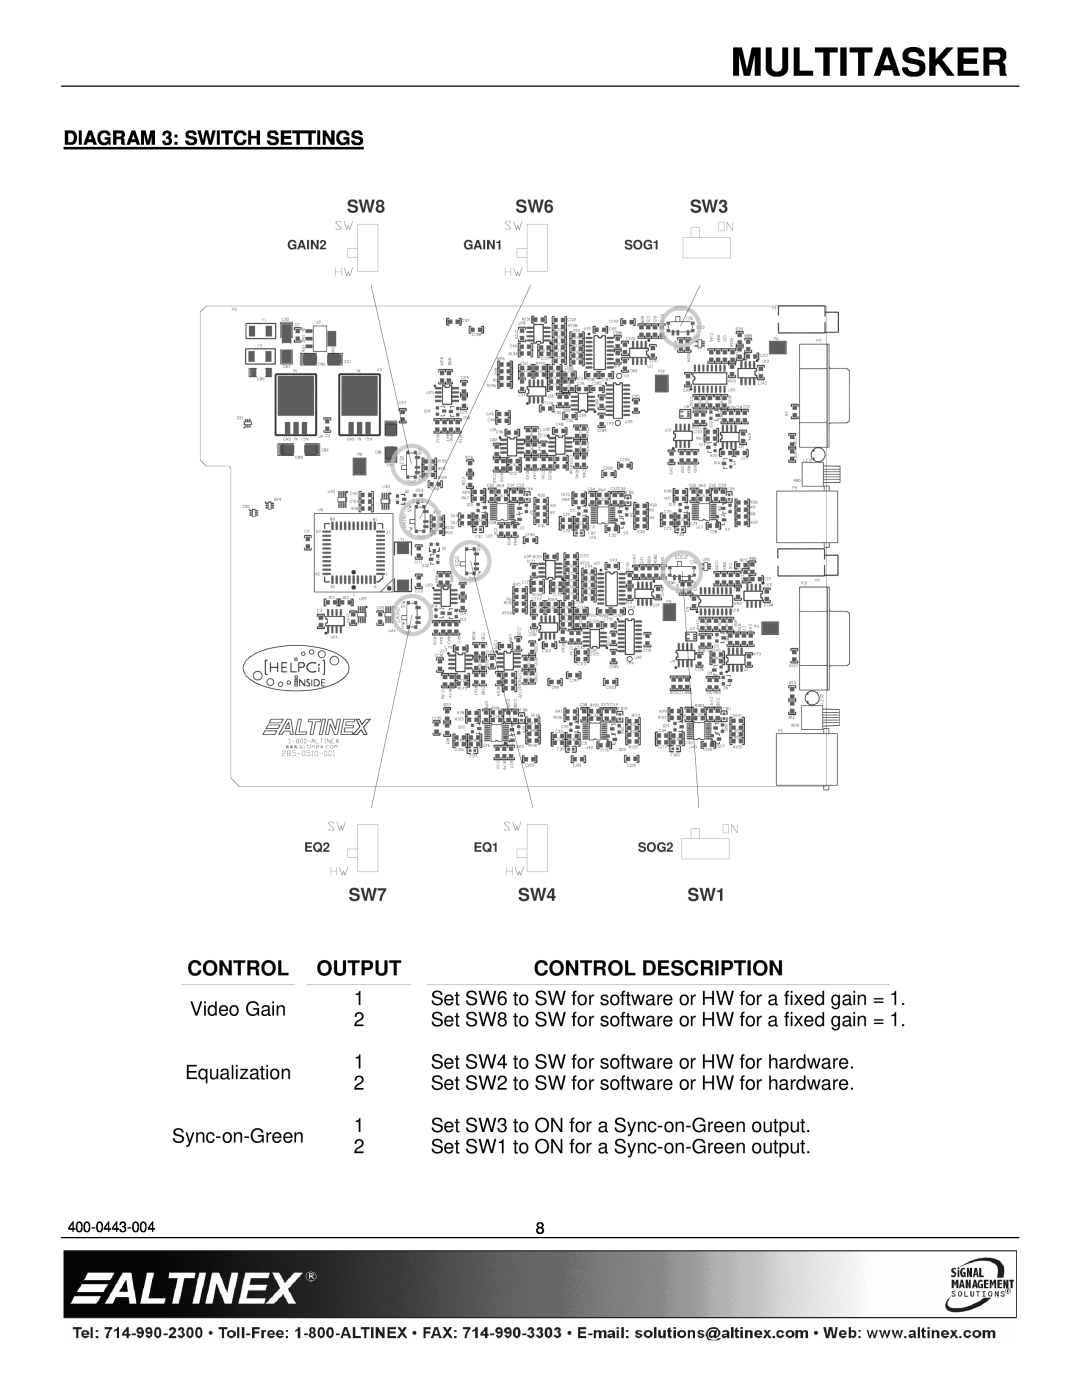 Altinex MT115-111 manual Multitasker, Control Output, Control Description, DIAGRAM 3 SWITCH SETTINGS 